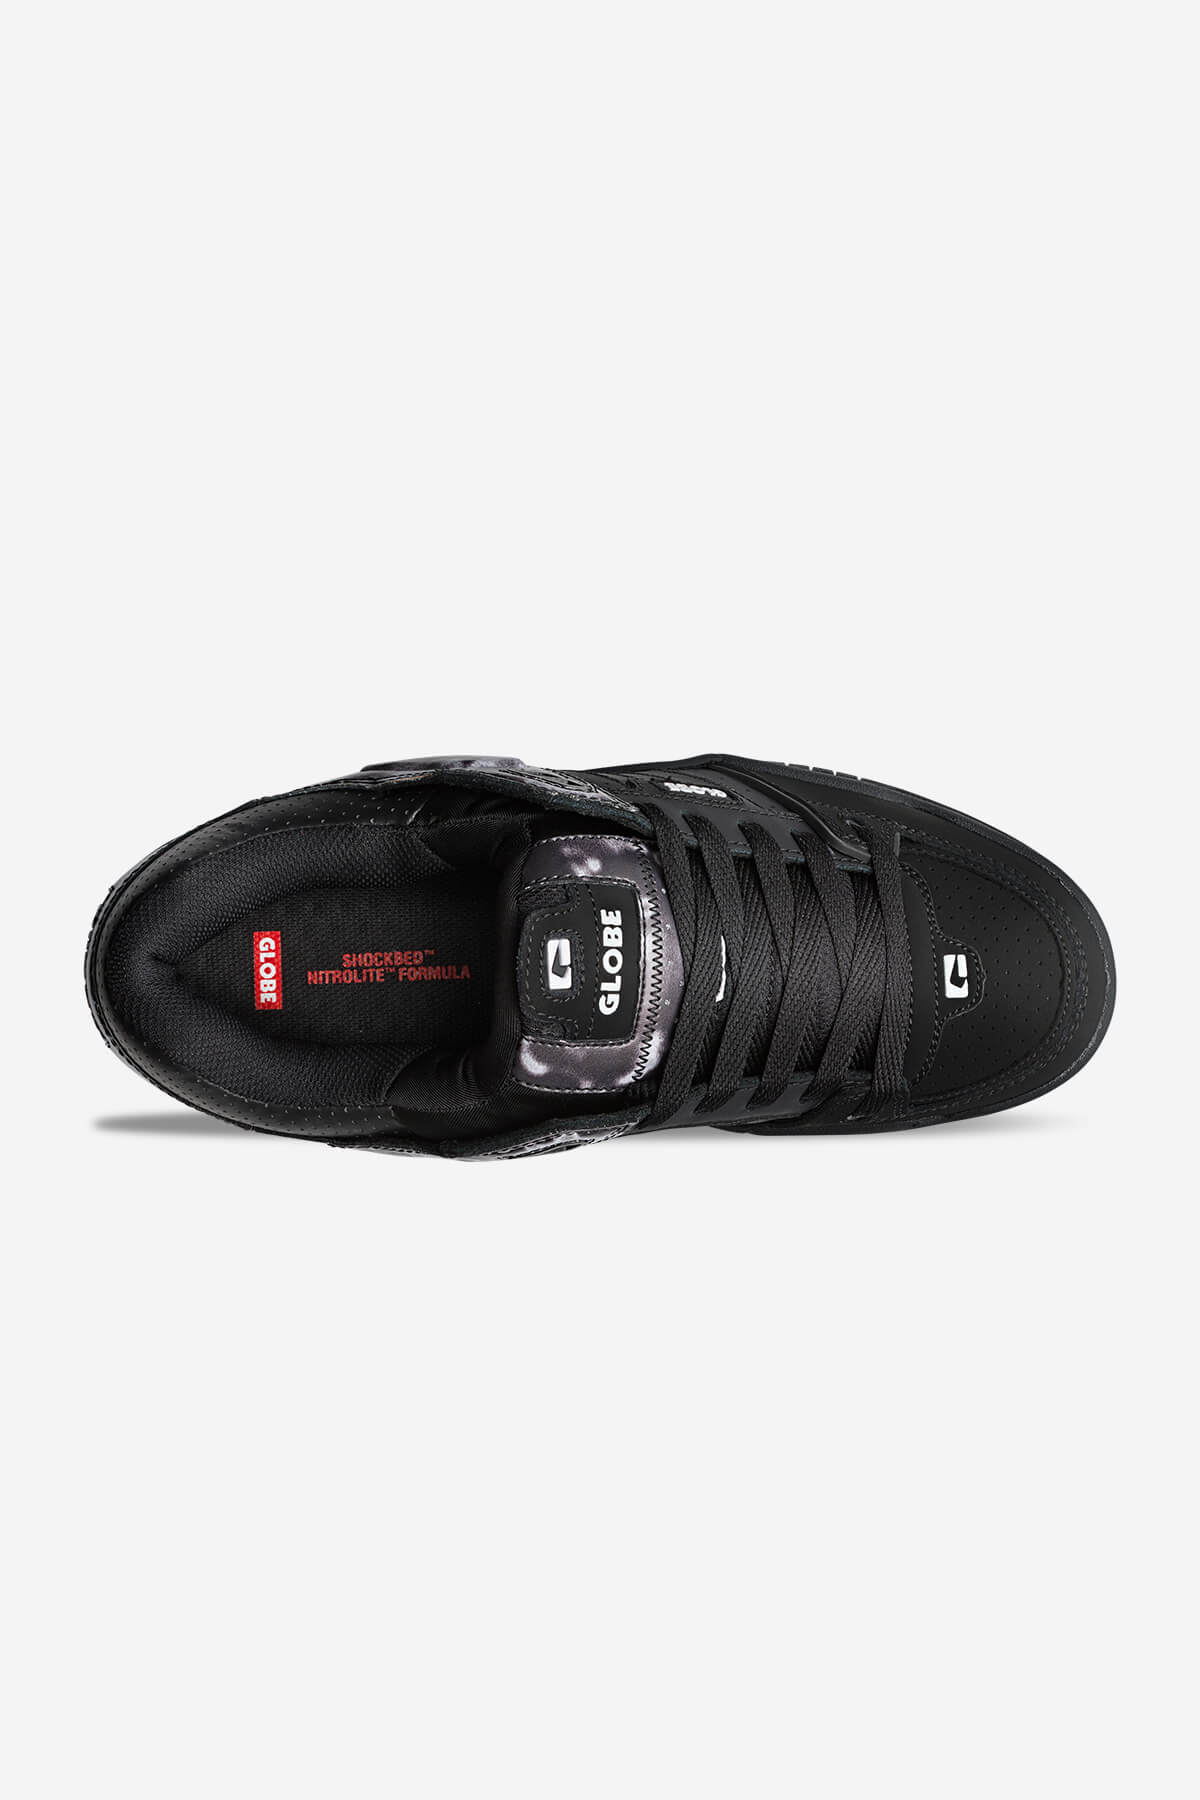 fusion black phantom camo skate shoes